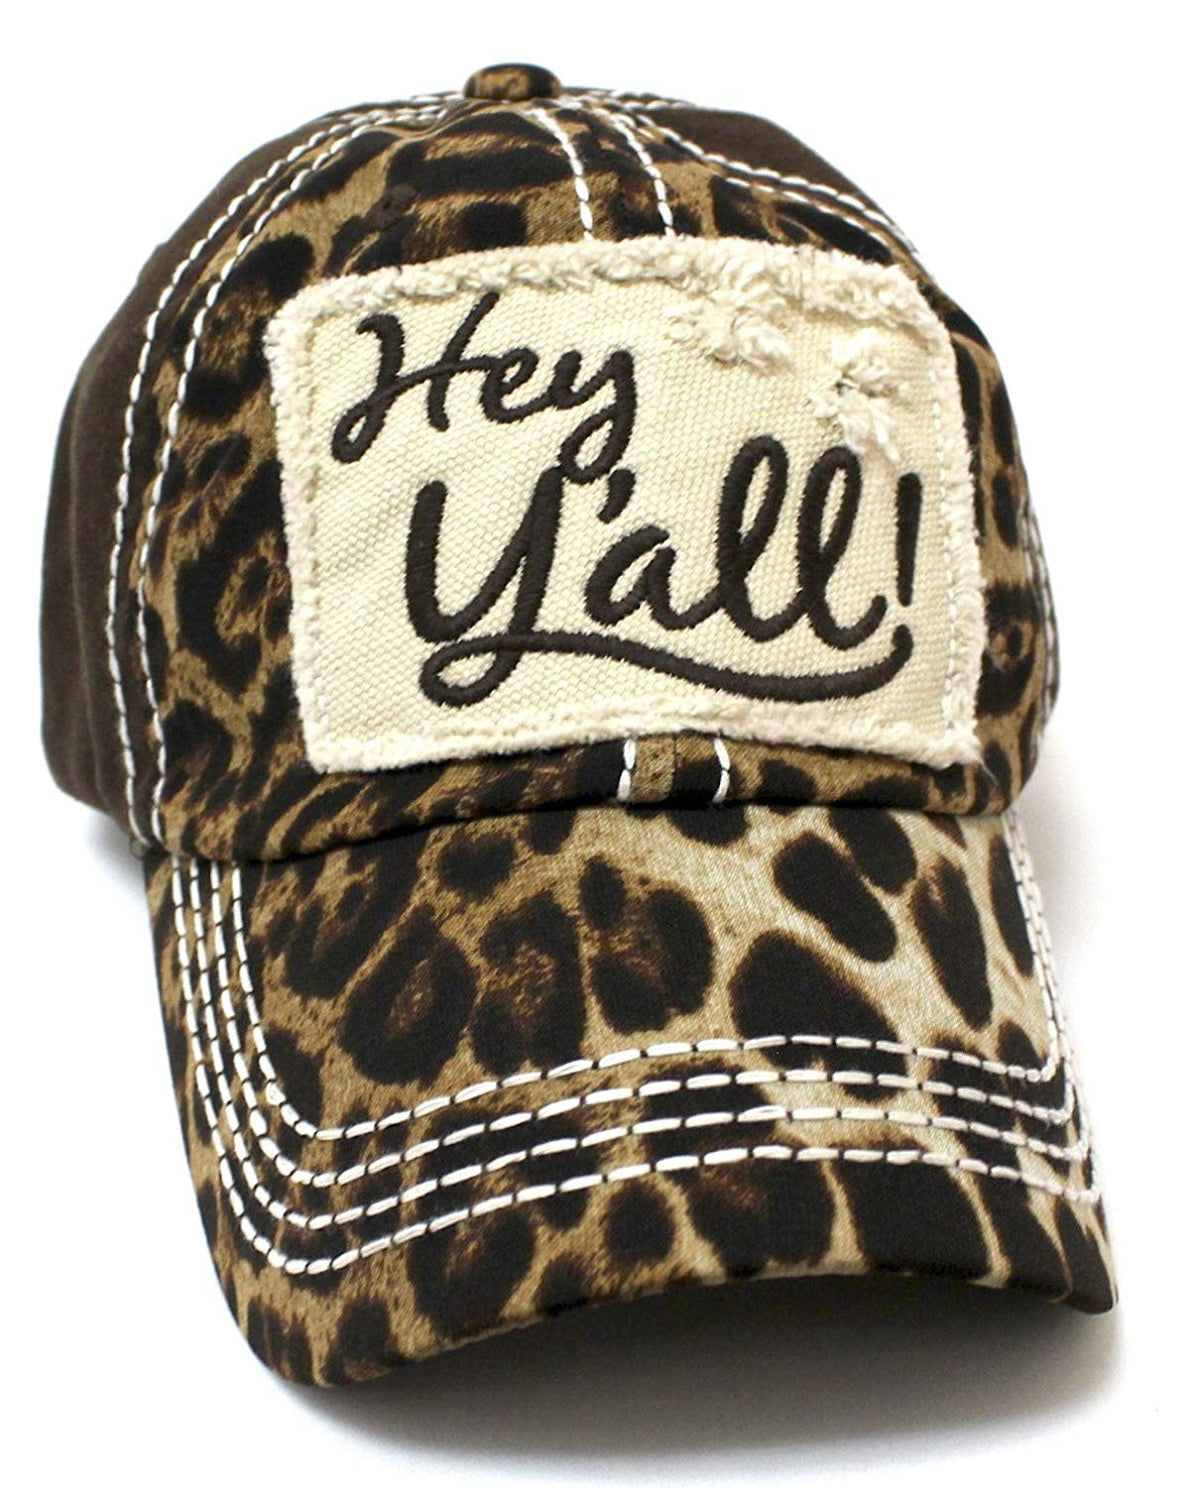 Brown & Leopard Hey Y'all Vintage Hat - Caps 'N Vintage 